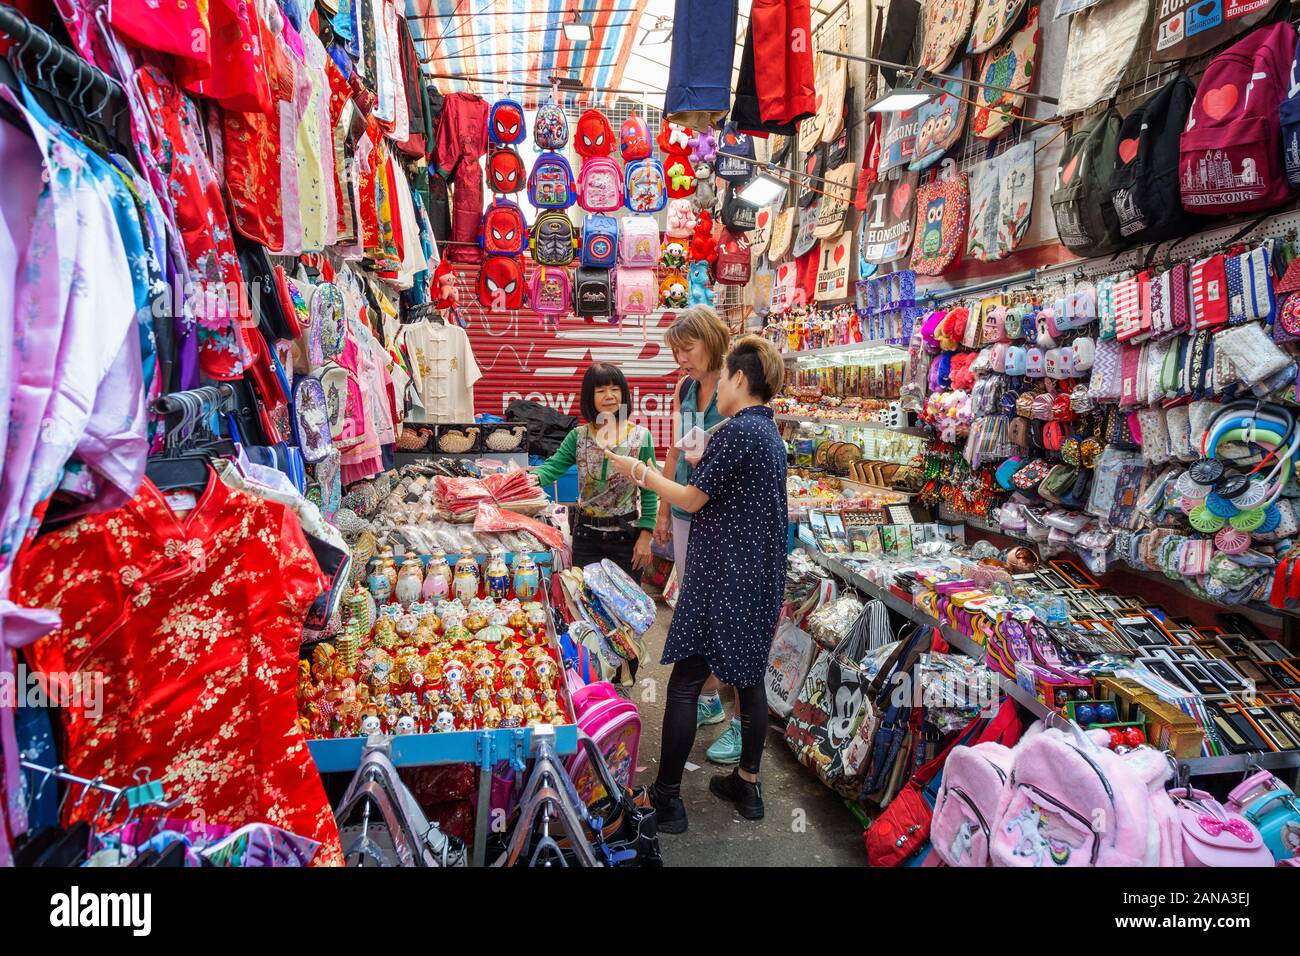 Kowloon Hong Kong mercato; una turista ad acquistare vestiti in un mercato in stallo, Kowloon, Hong Kong Asia Foto Stock